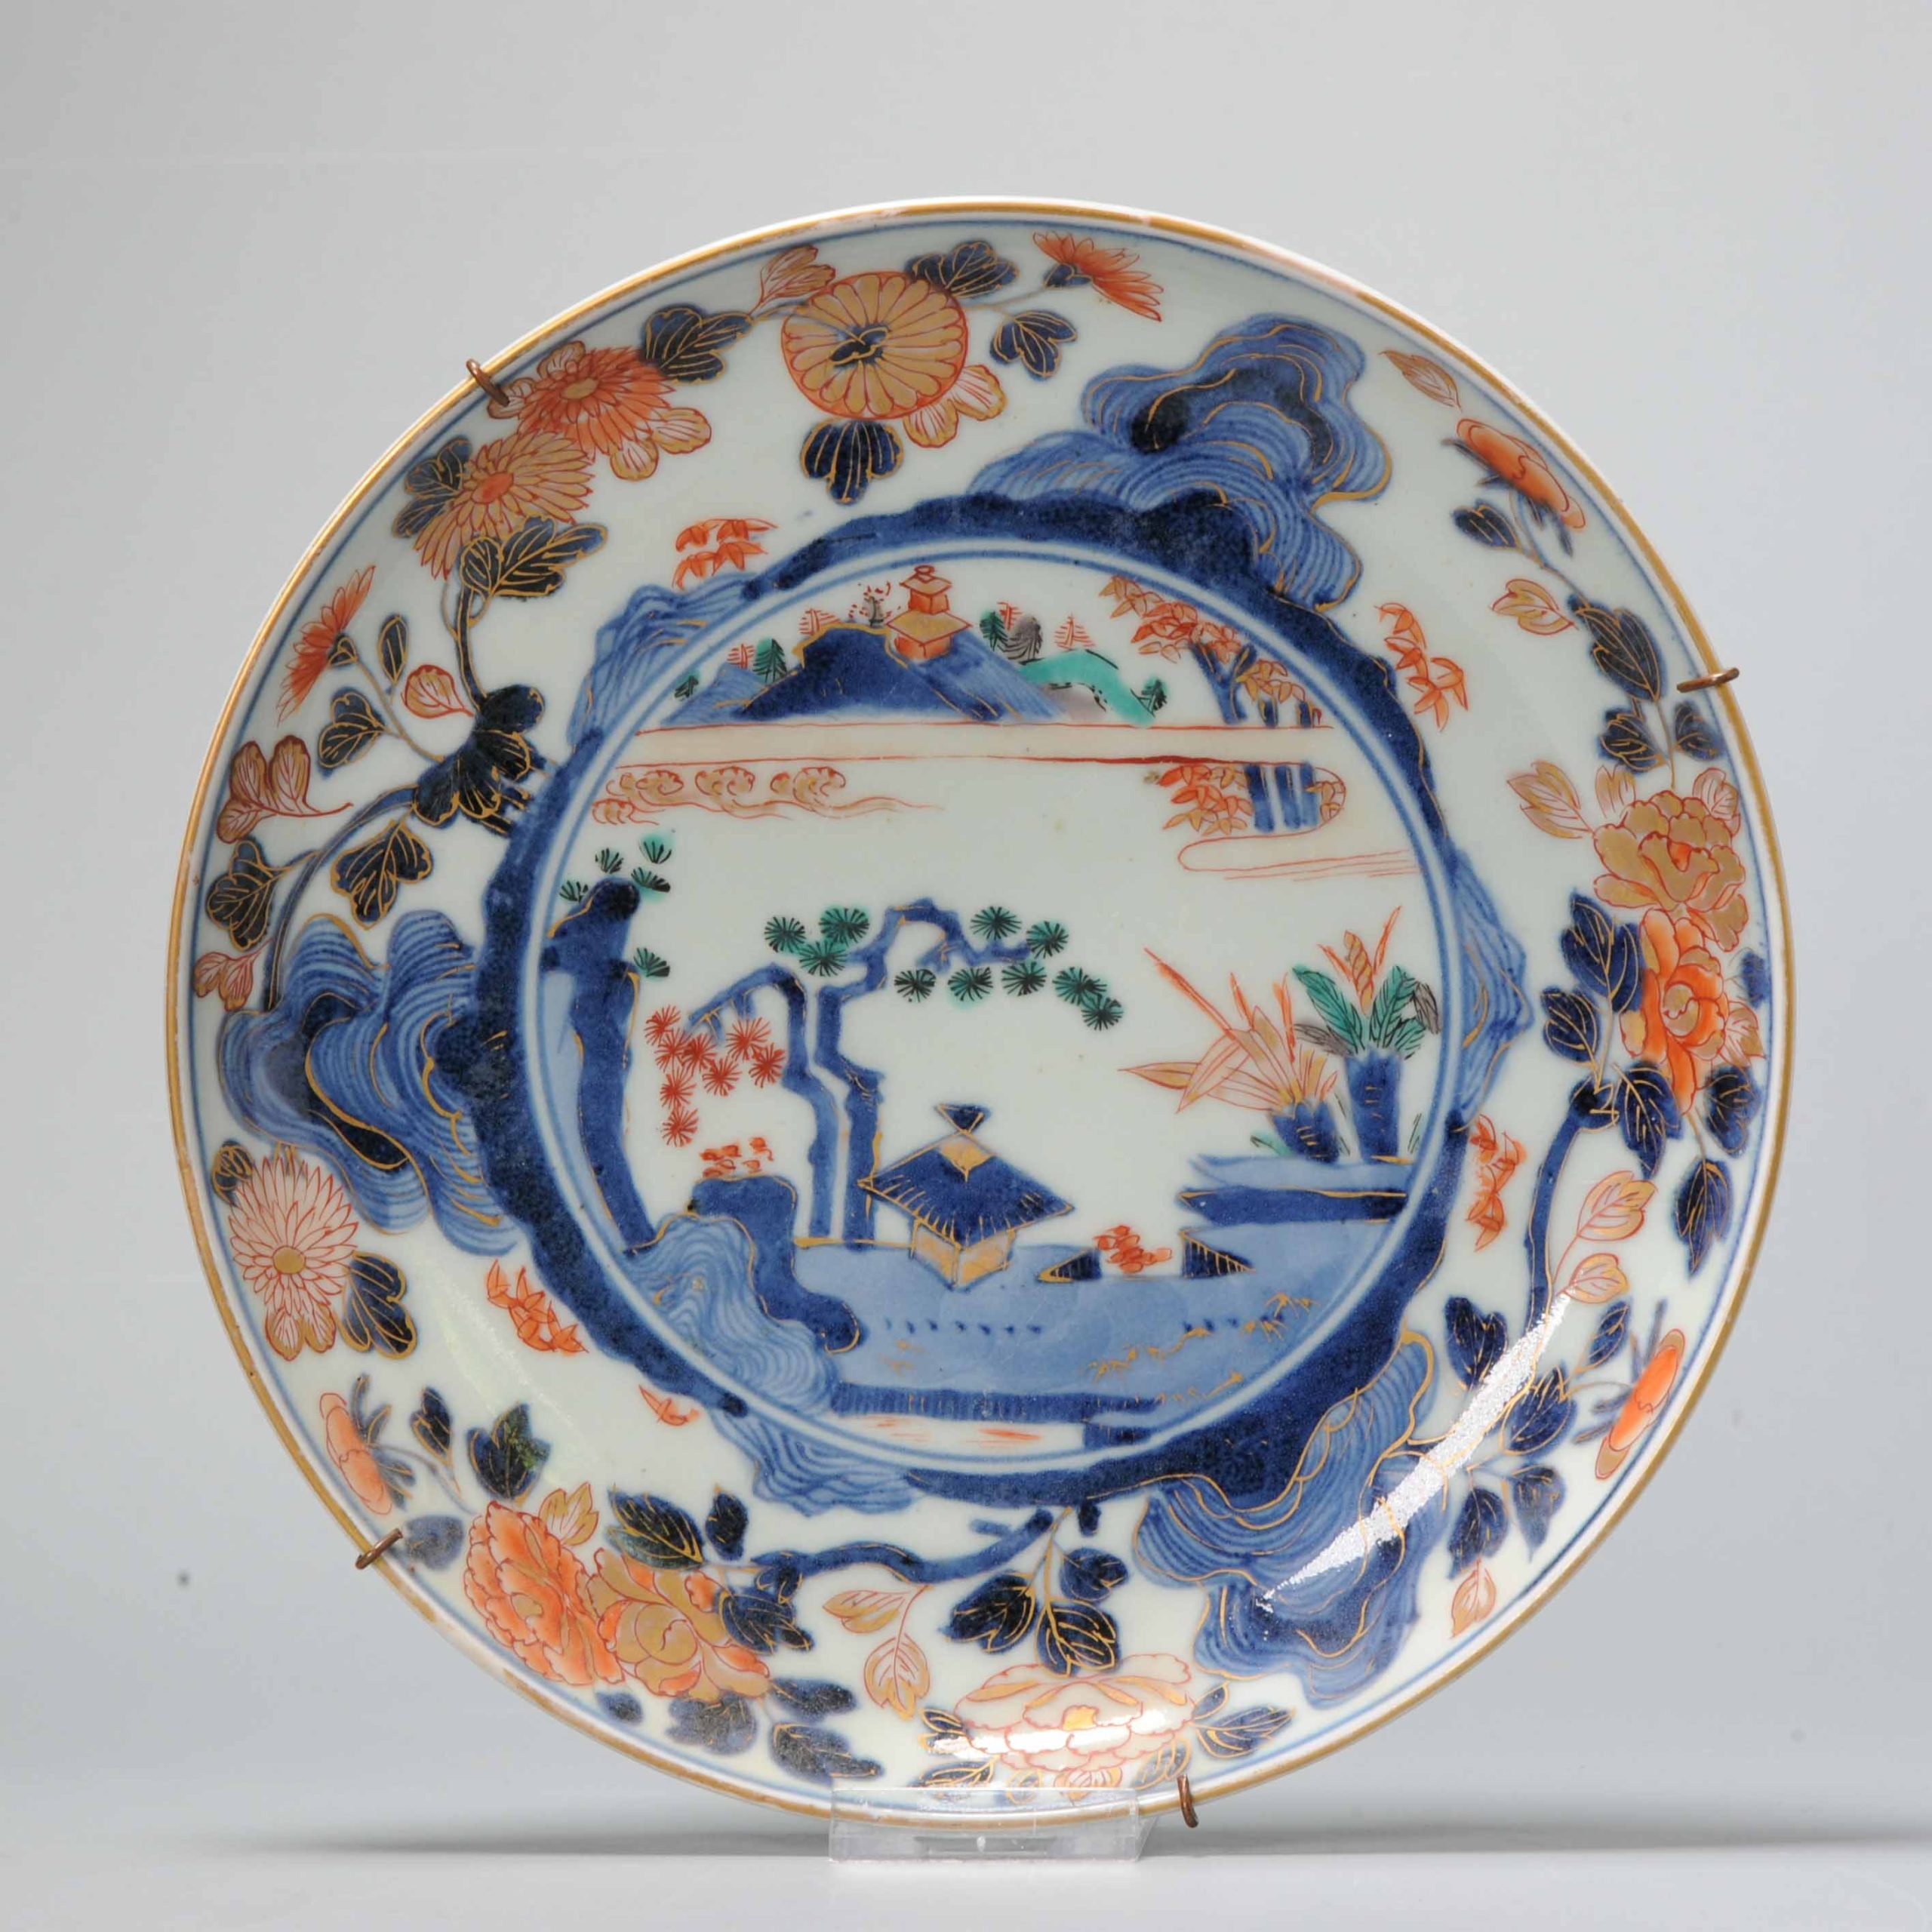 Antique Japanese Genroku Imari Plate ca 1670-1690 Arita Japan Porcelain